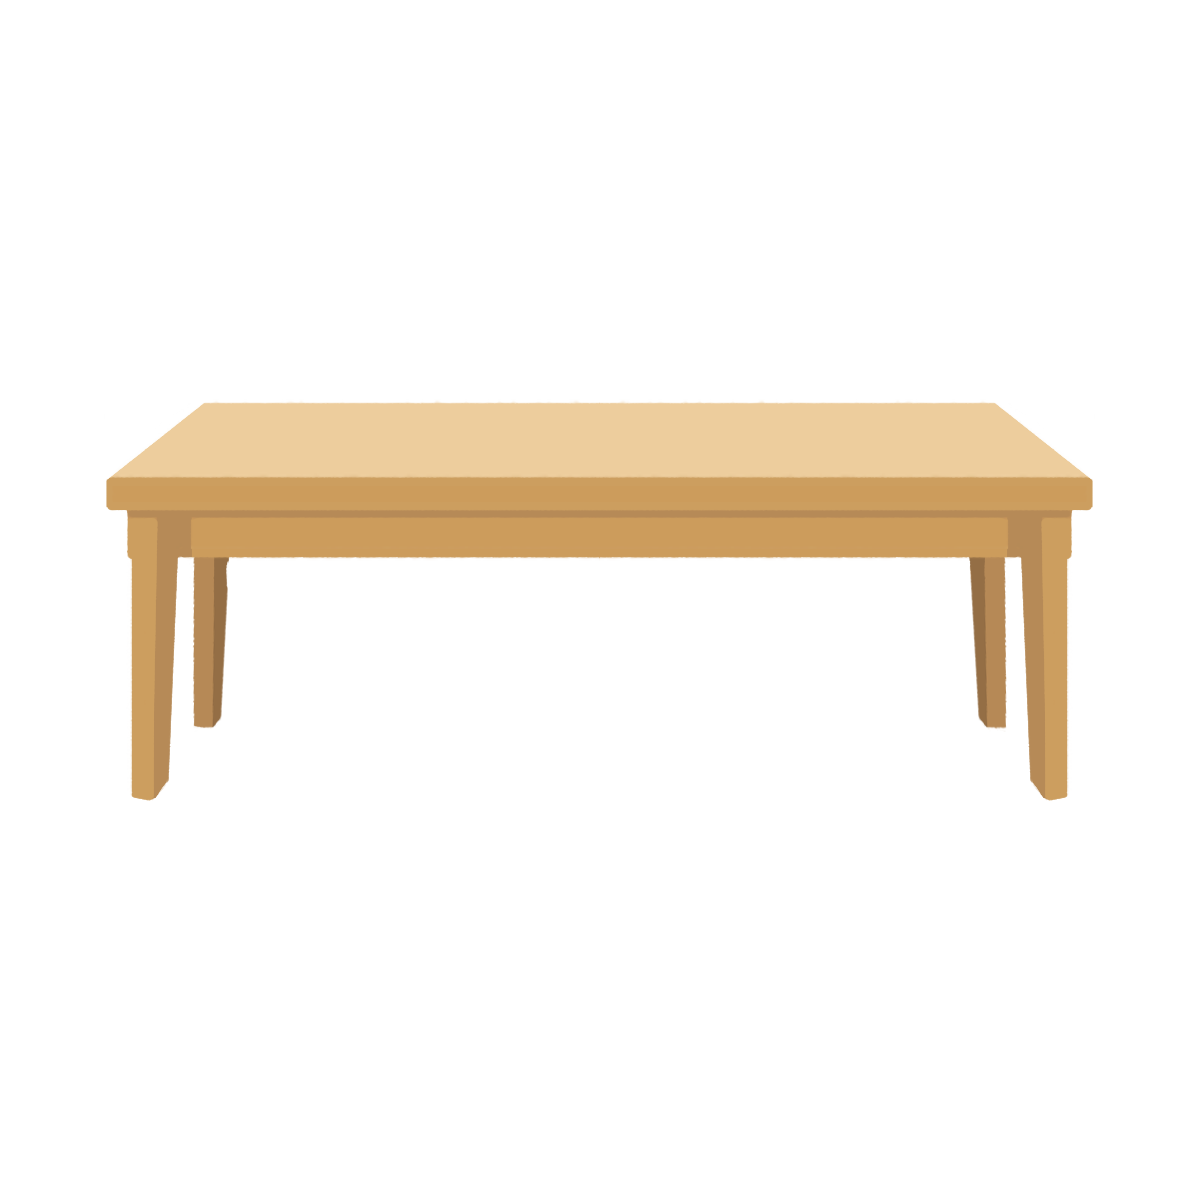 木製の座卓のイラスト エコのモト